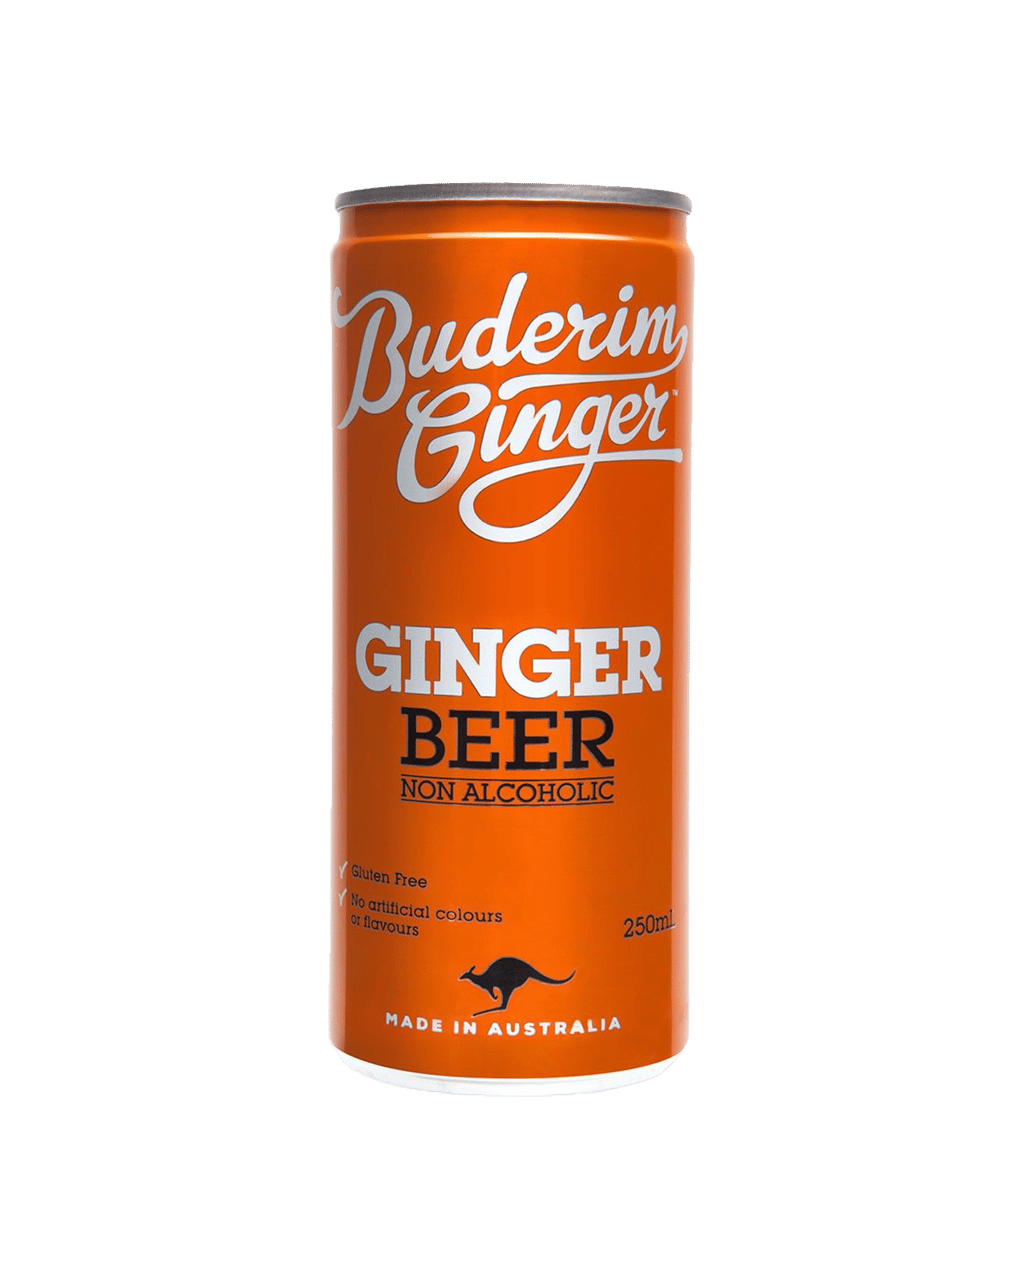 Buderim Ginger Beer 250ml Unbeatable Prices Buy Online Best Deals With Delivery Dan Murphys